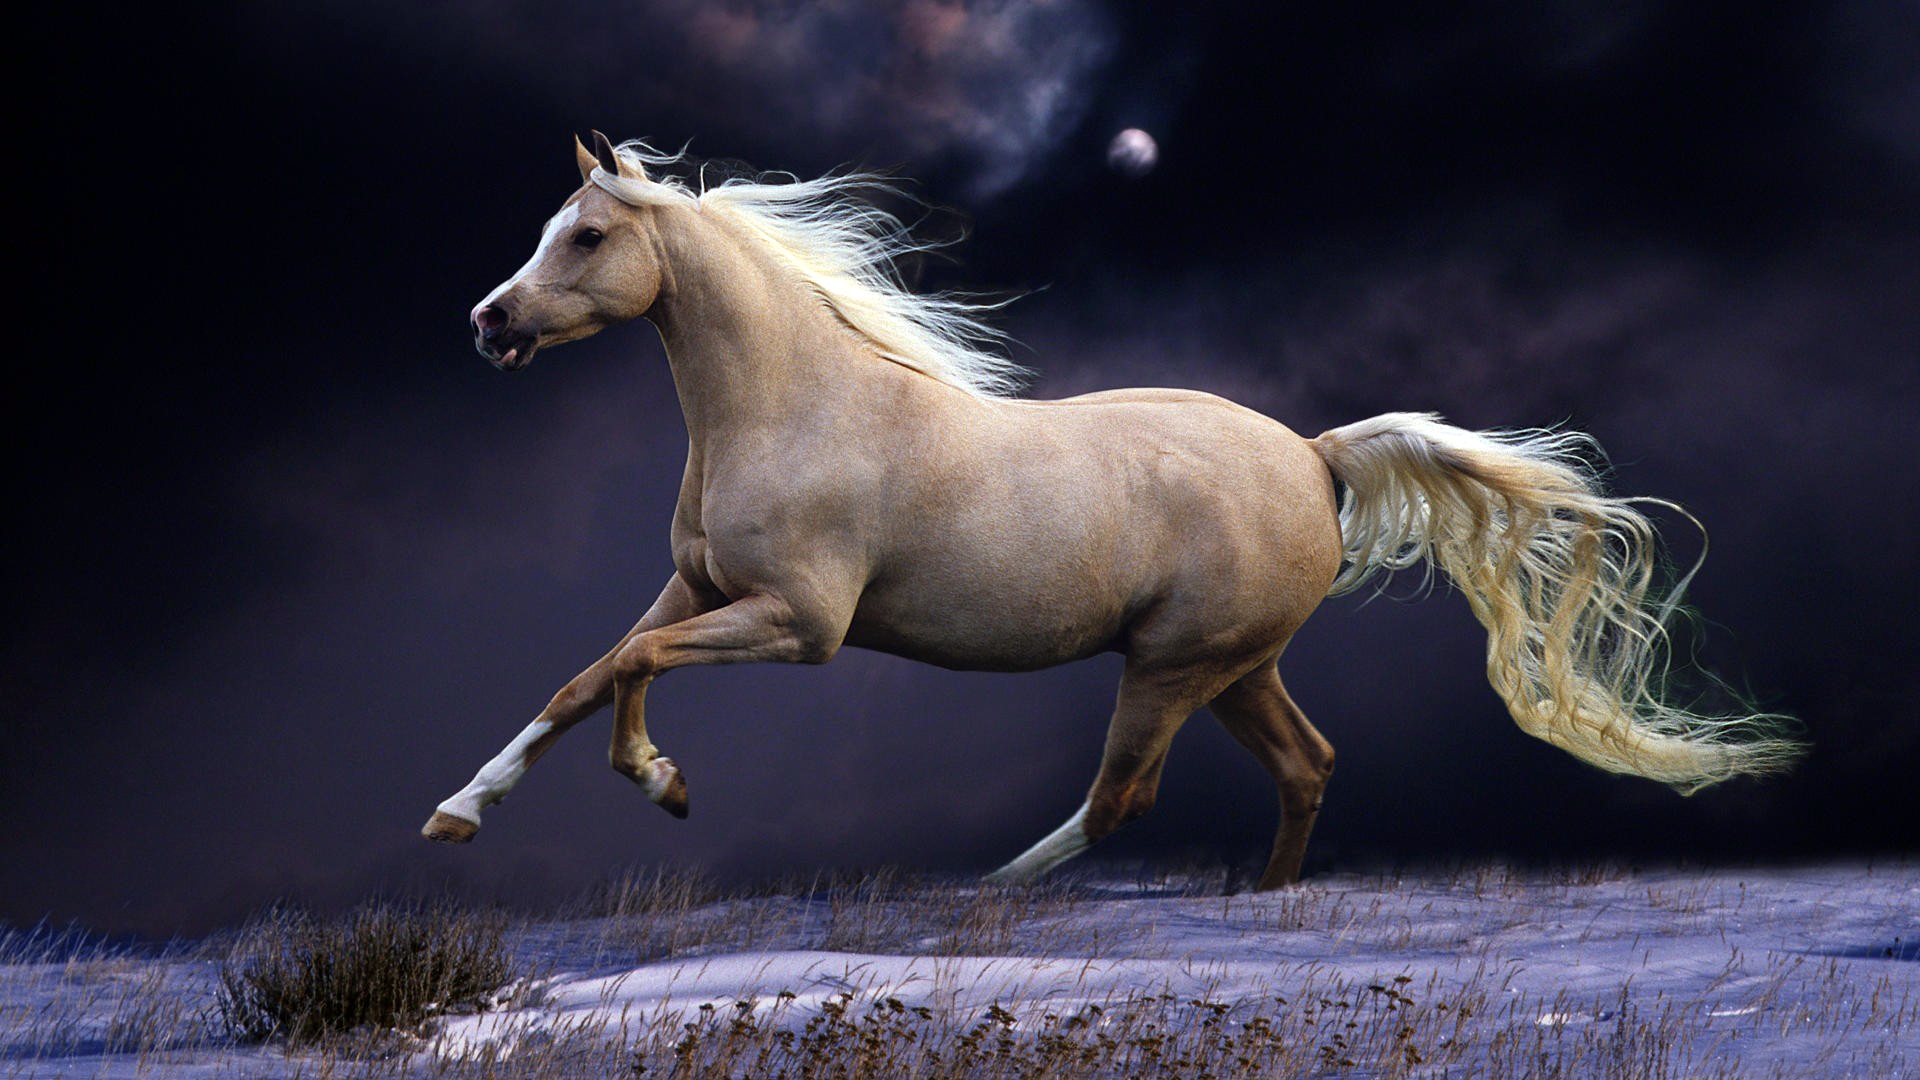 童话般的马800x600分辨率下载,童话般的马,高清图片